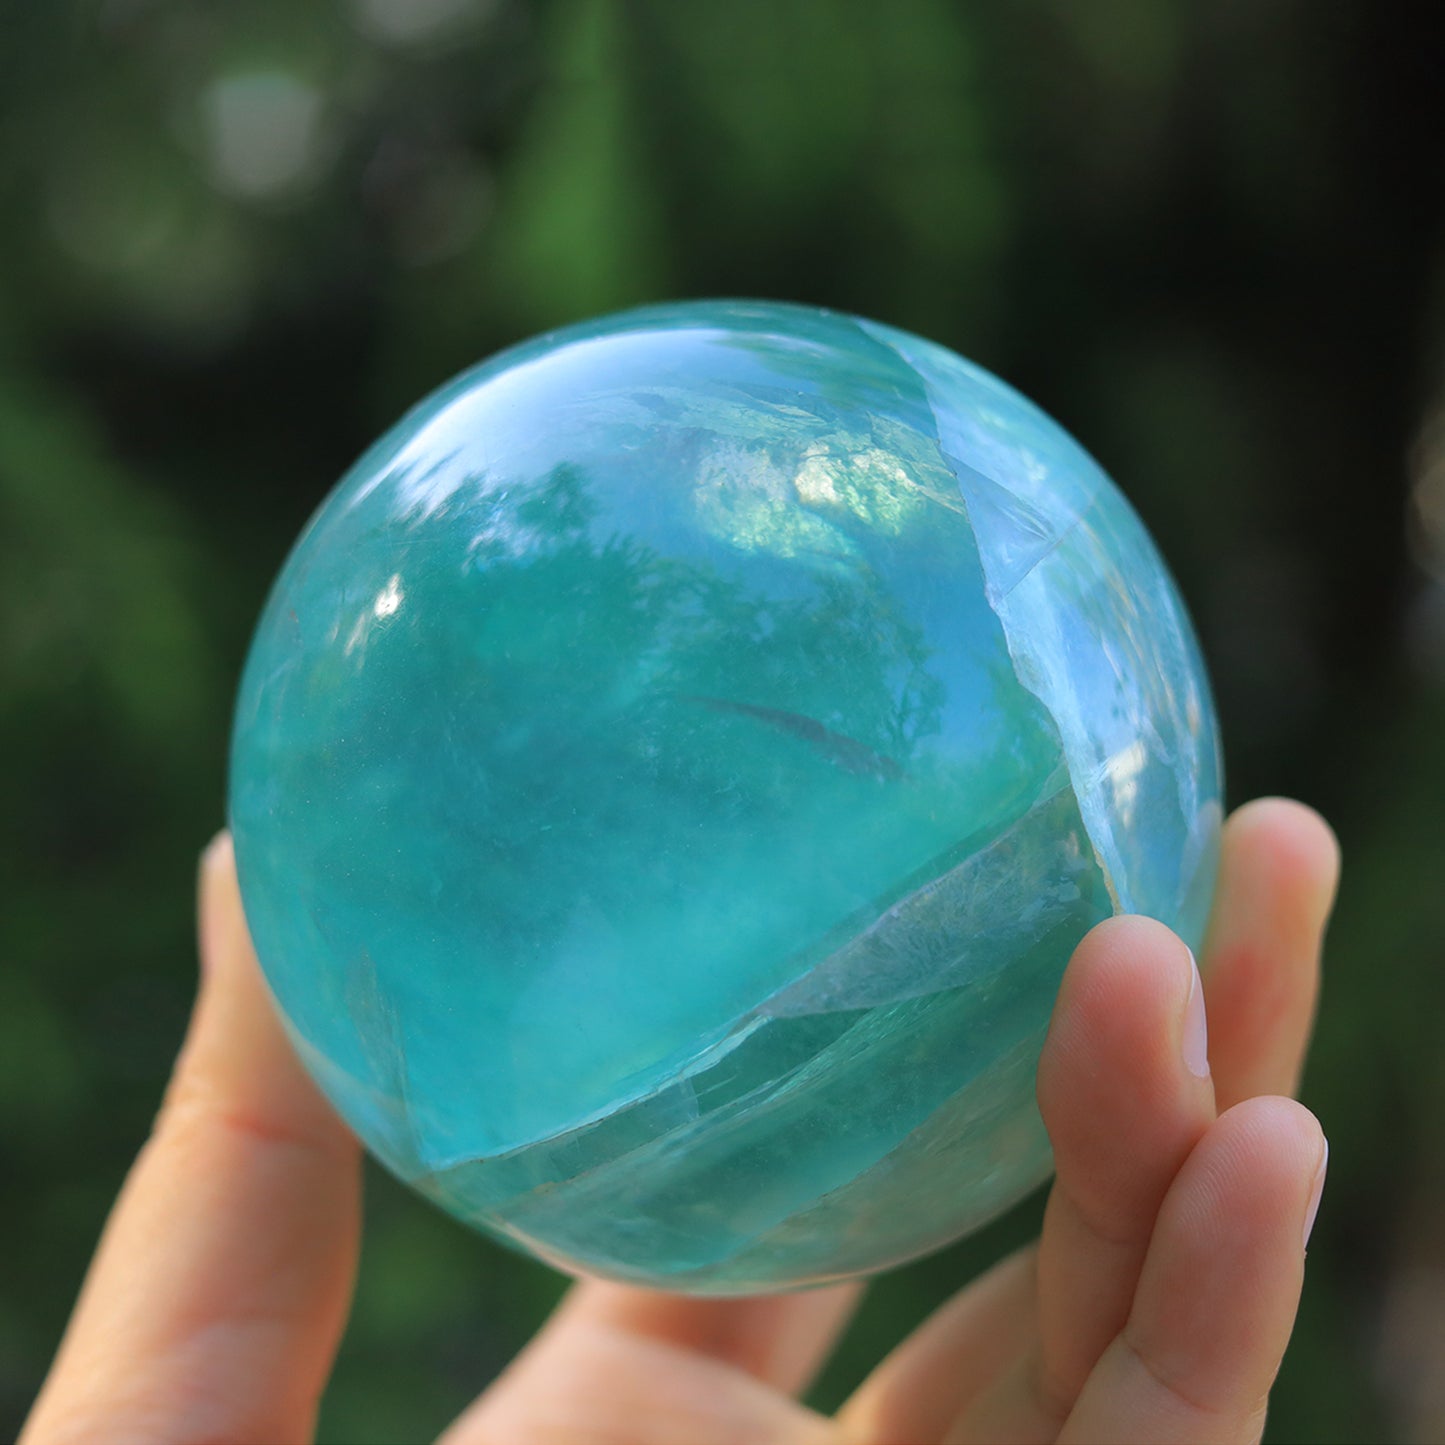 Green fluorite sphere